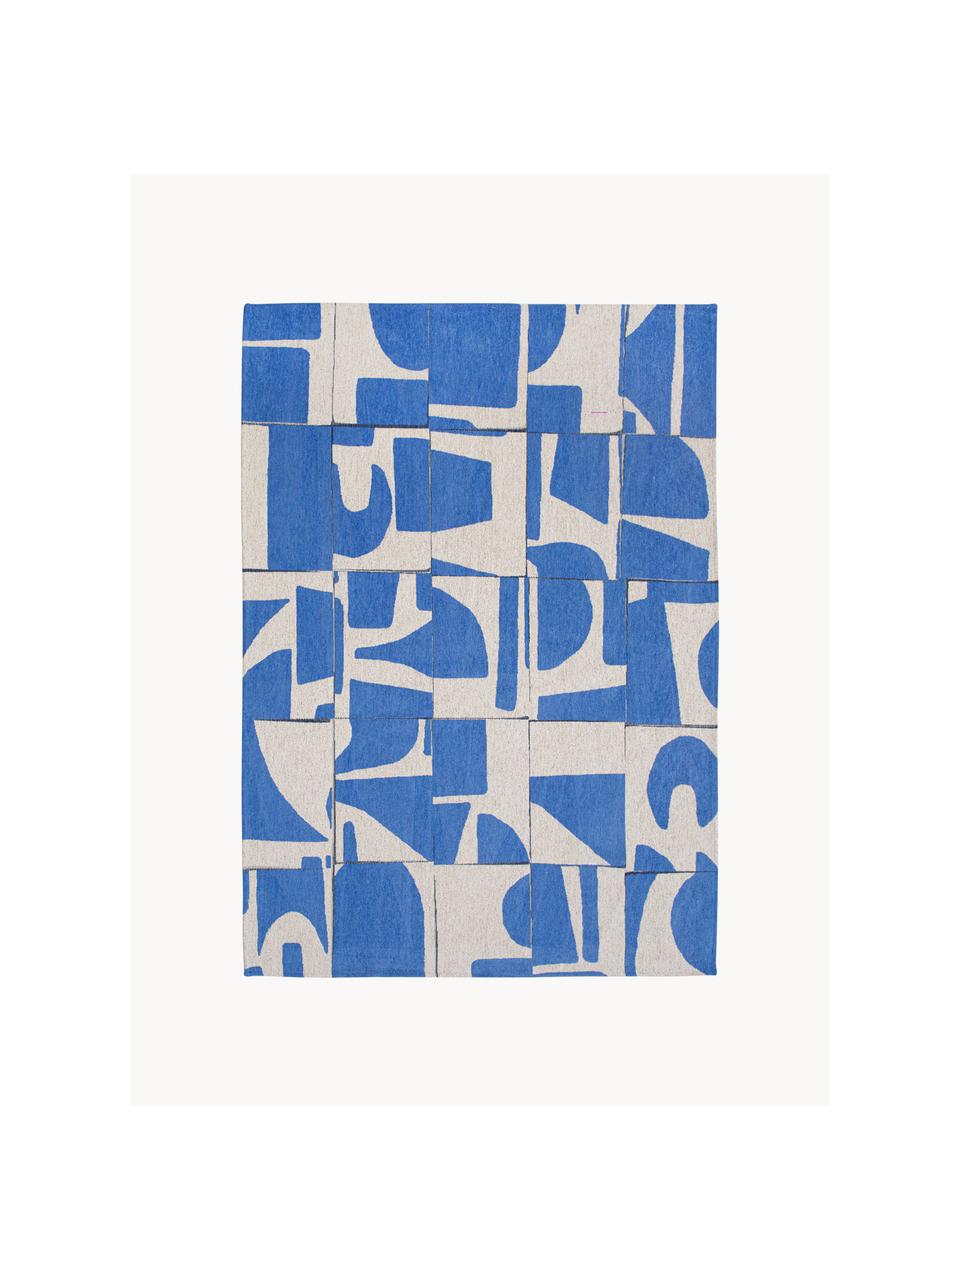 Teppich Papercut mit grafischem Muster, 100 % Polyester, Blau, Cremeweiß, B 80 x L 150 cm (Größe XS)